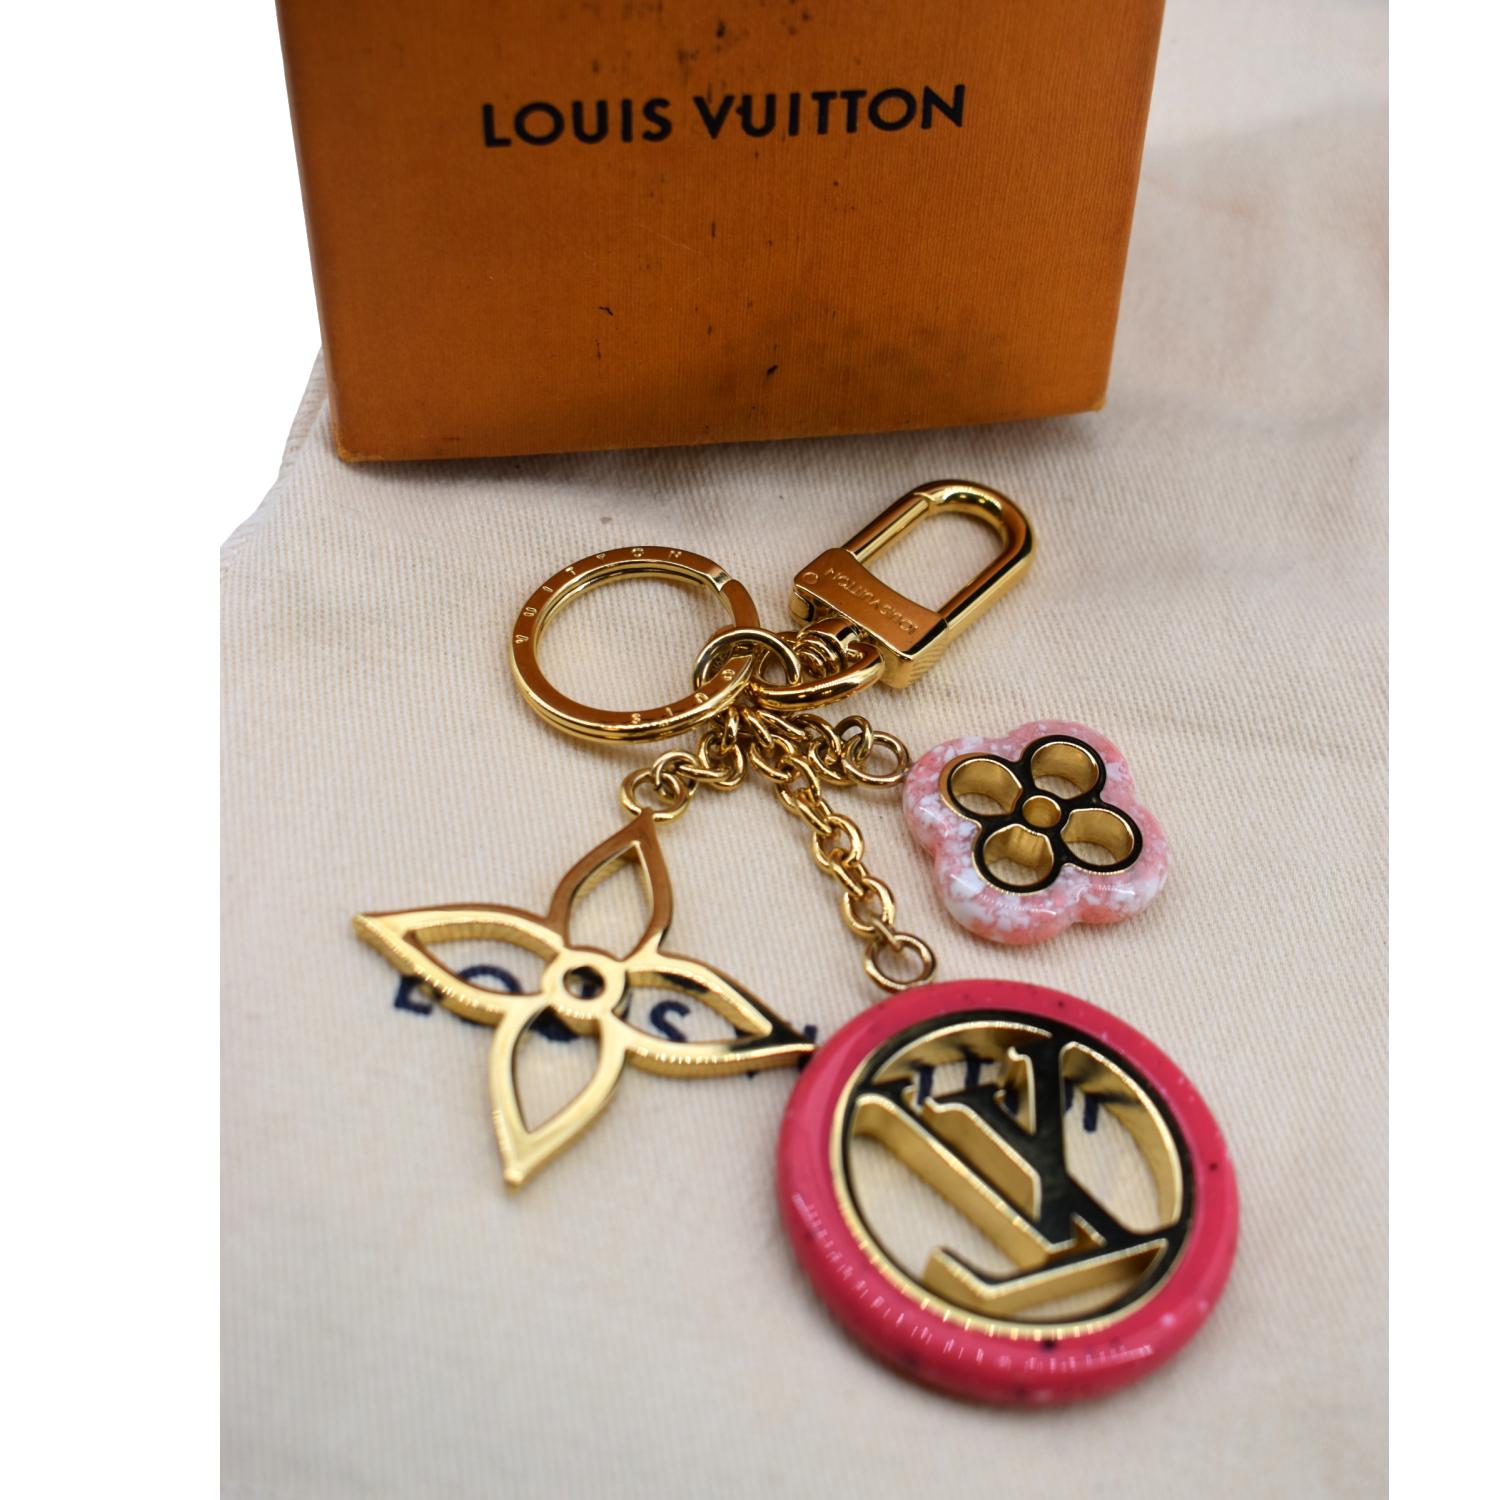  Louis Vuitton Keychain